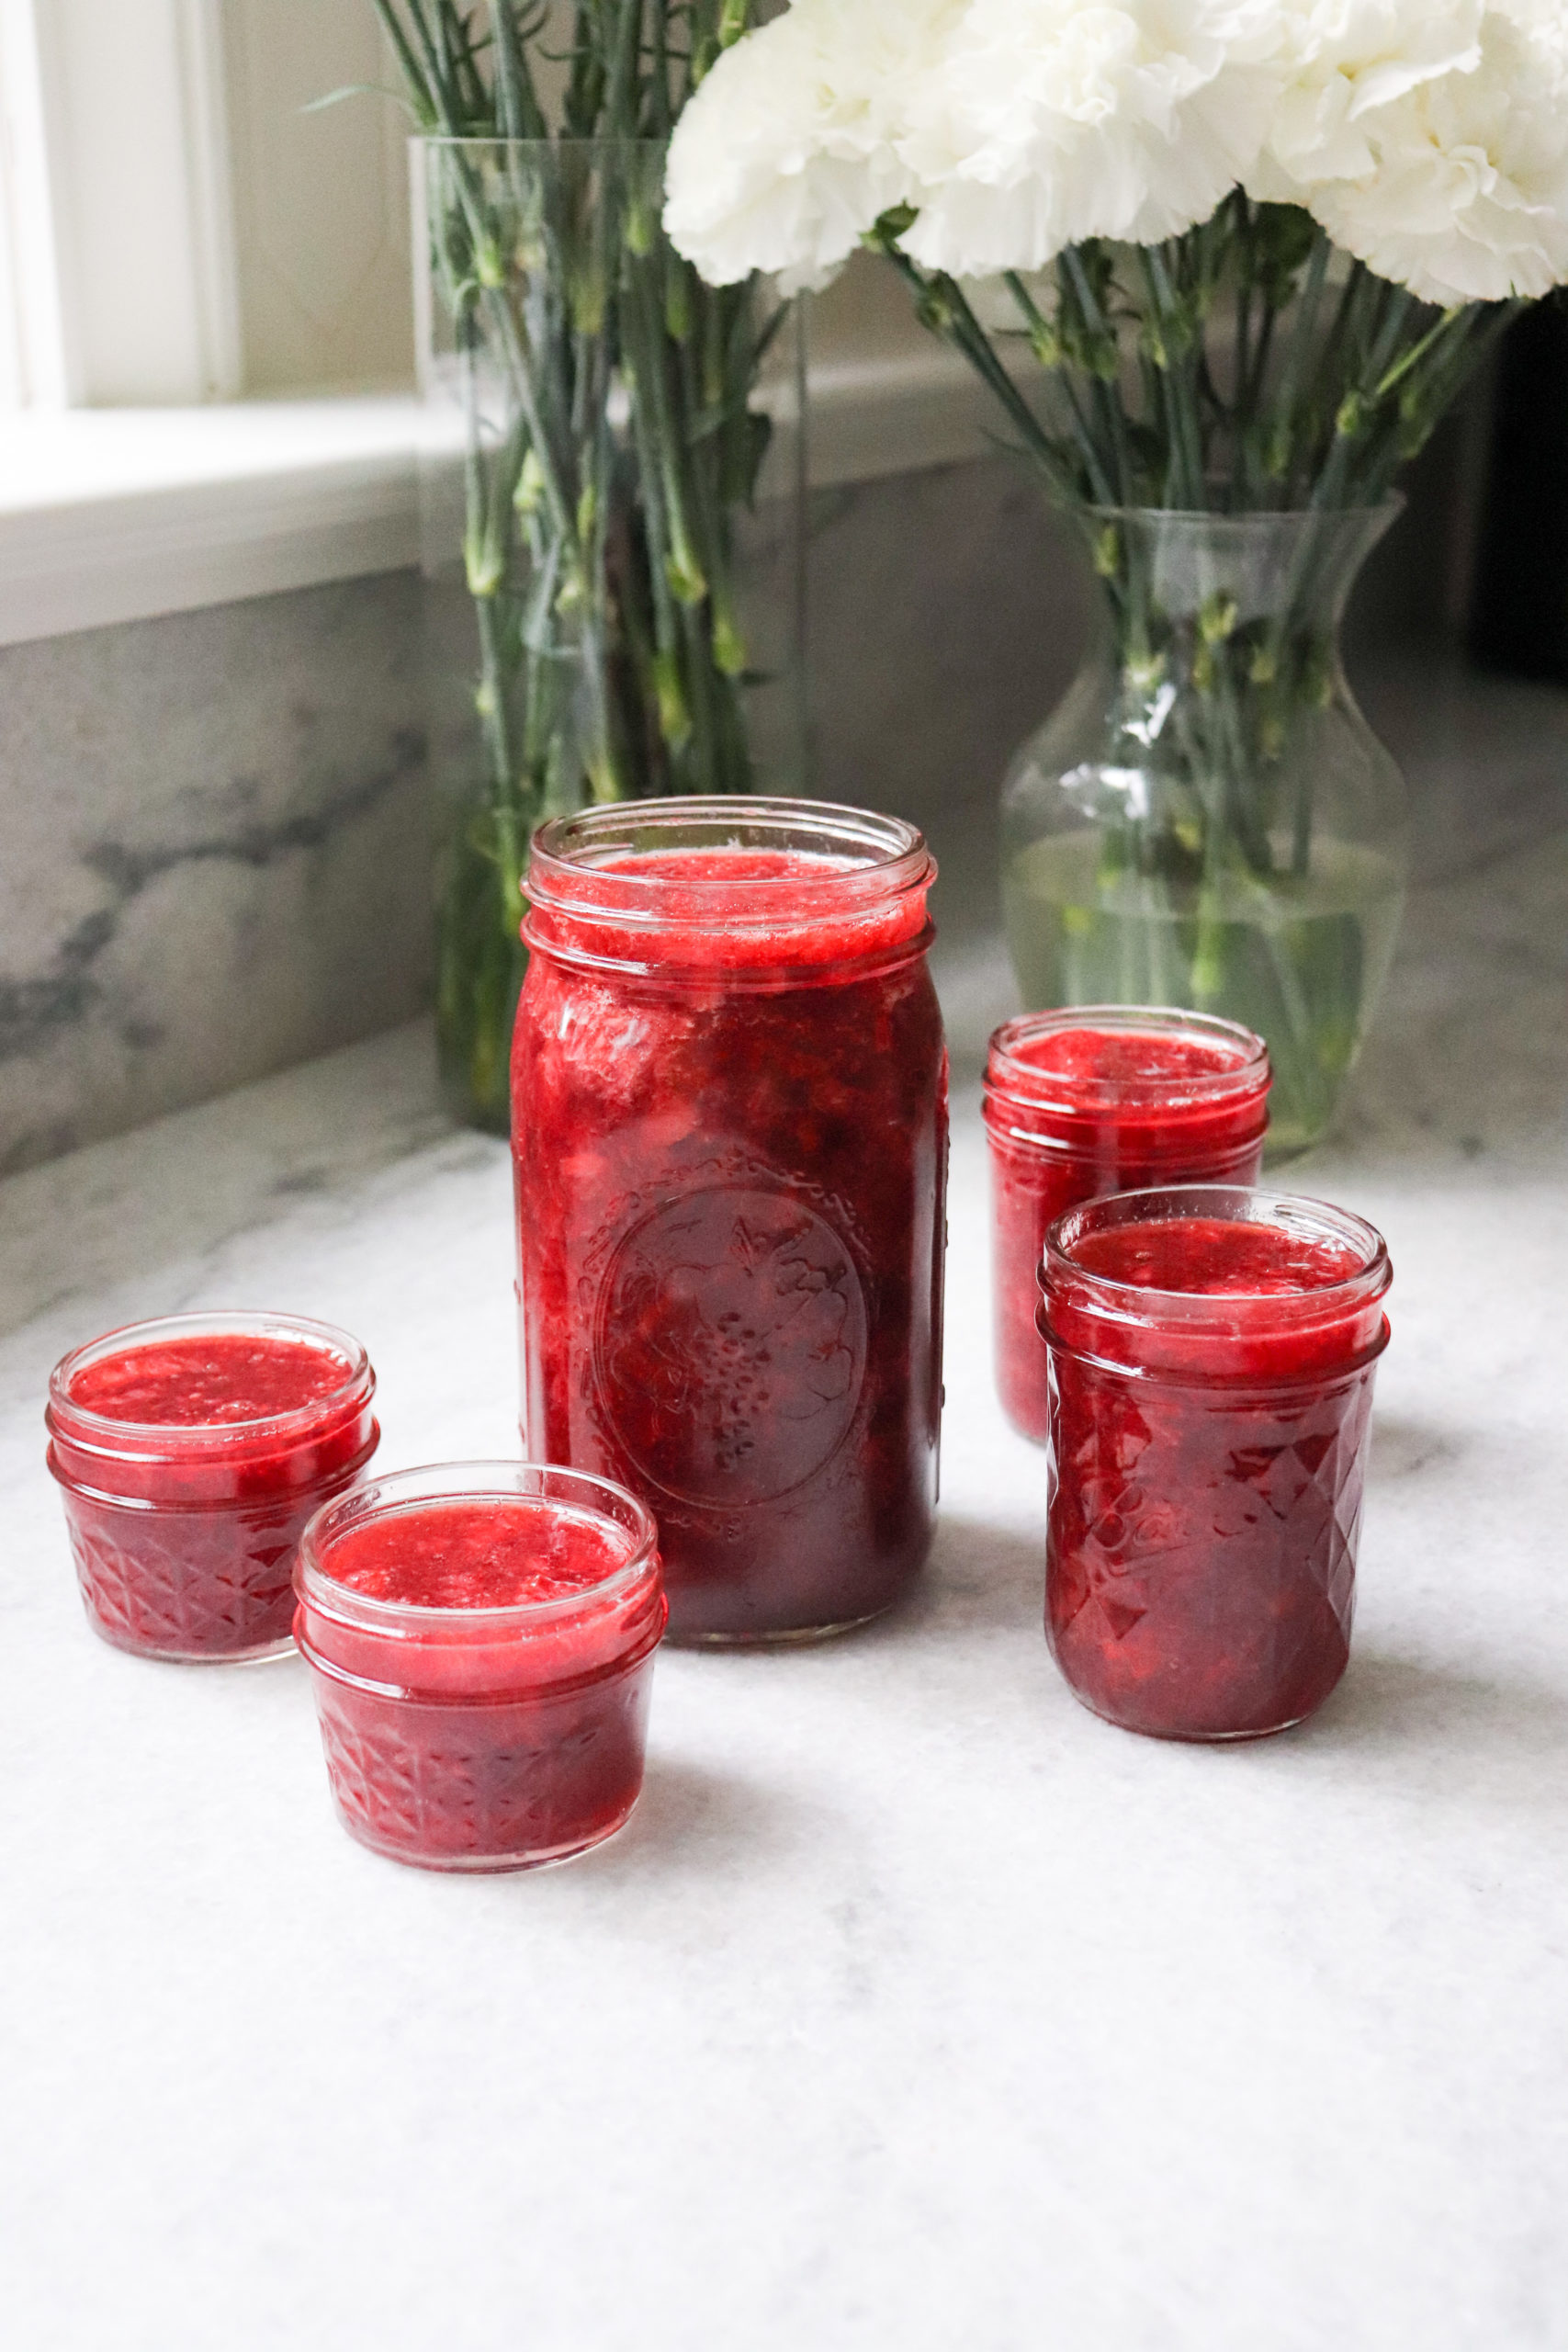 Eva Amurri shares how to make jam